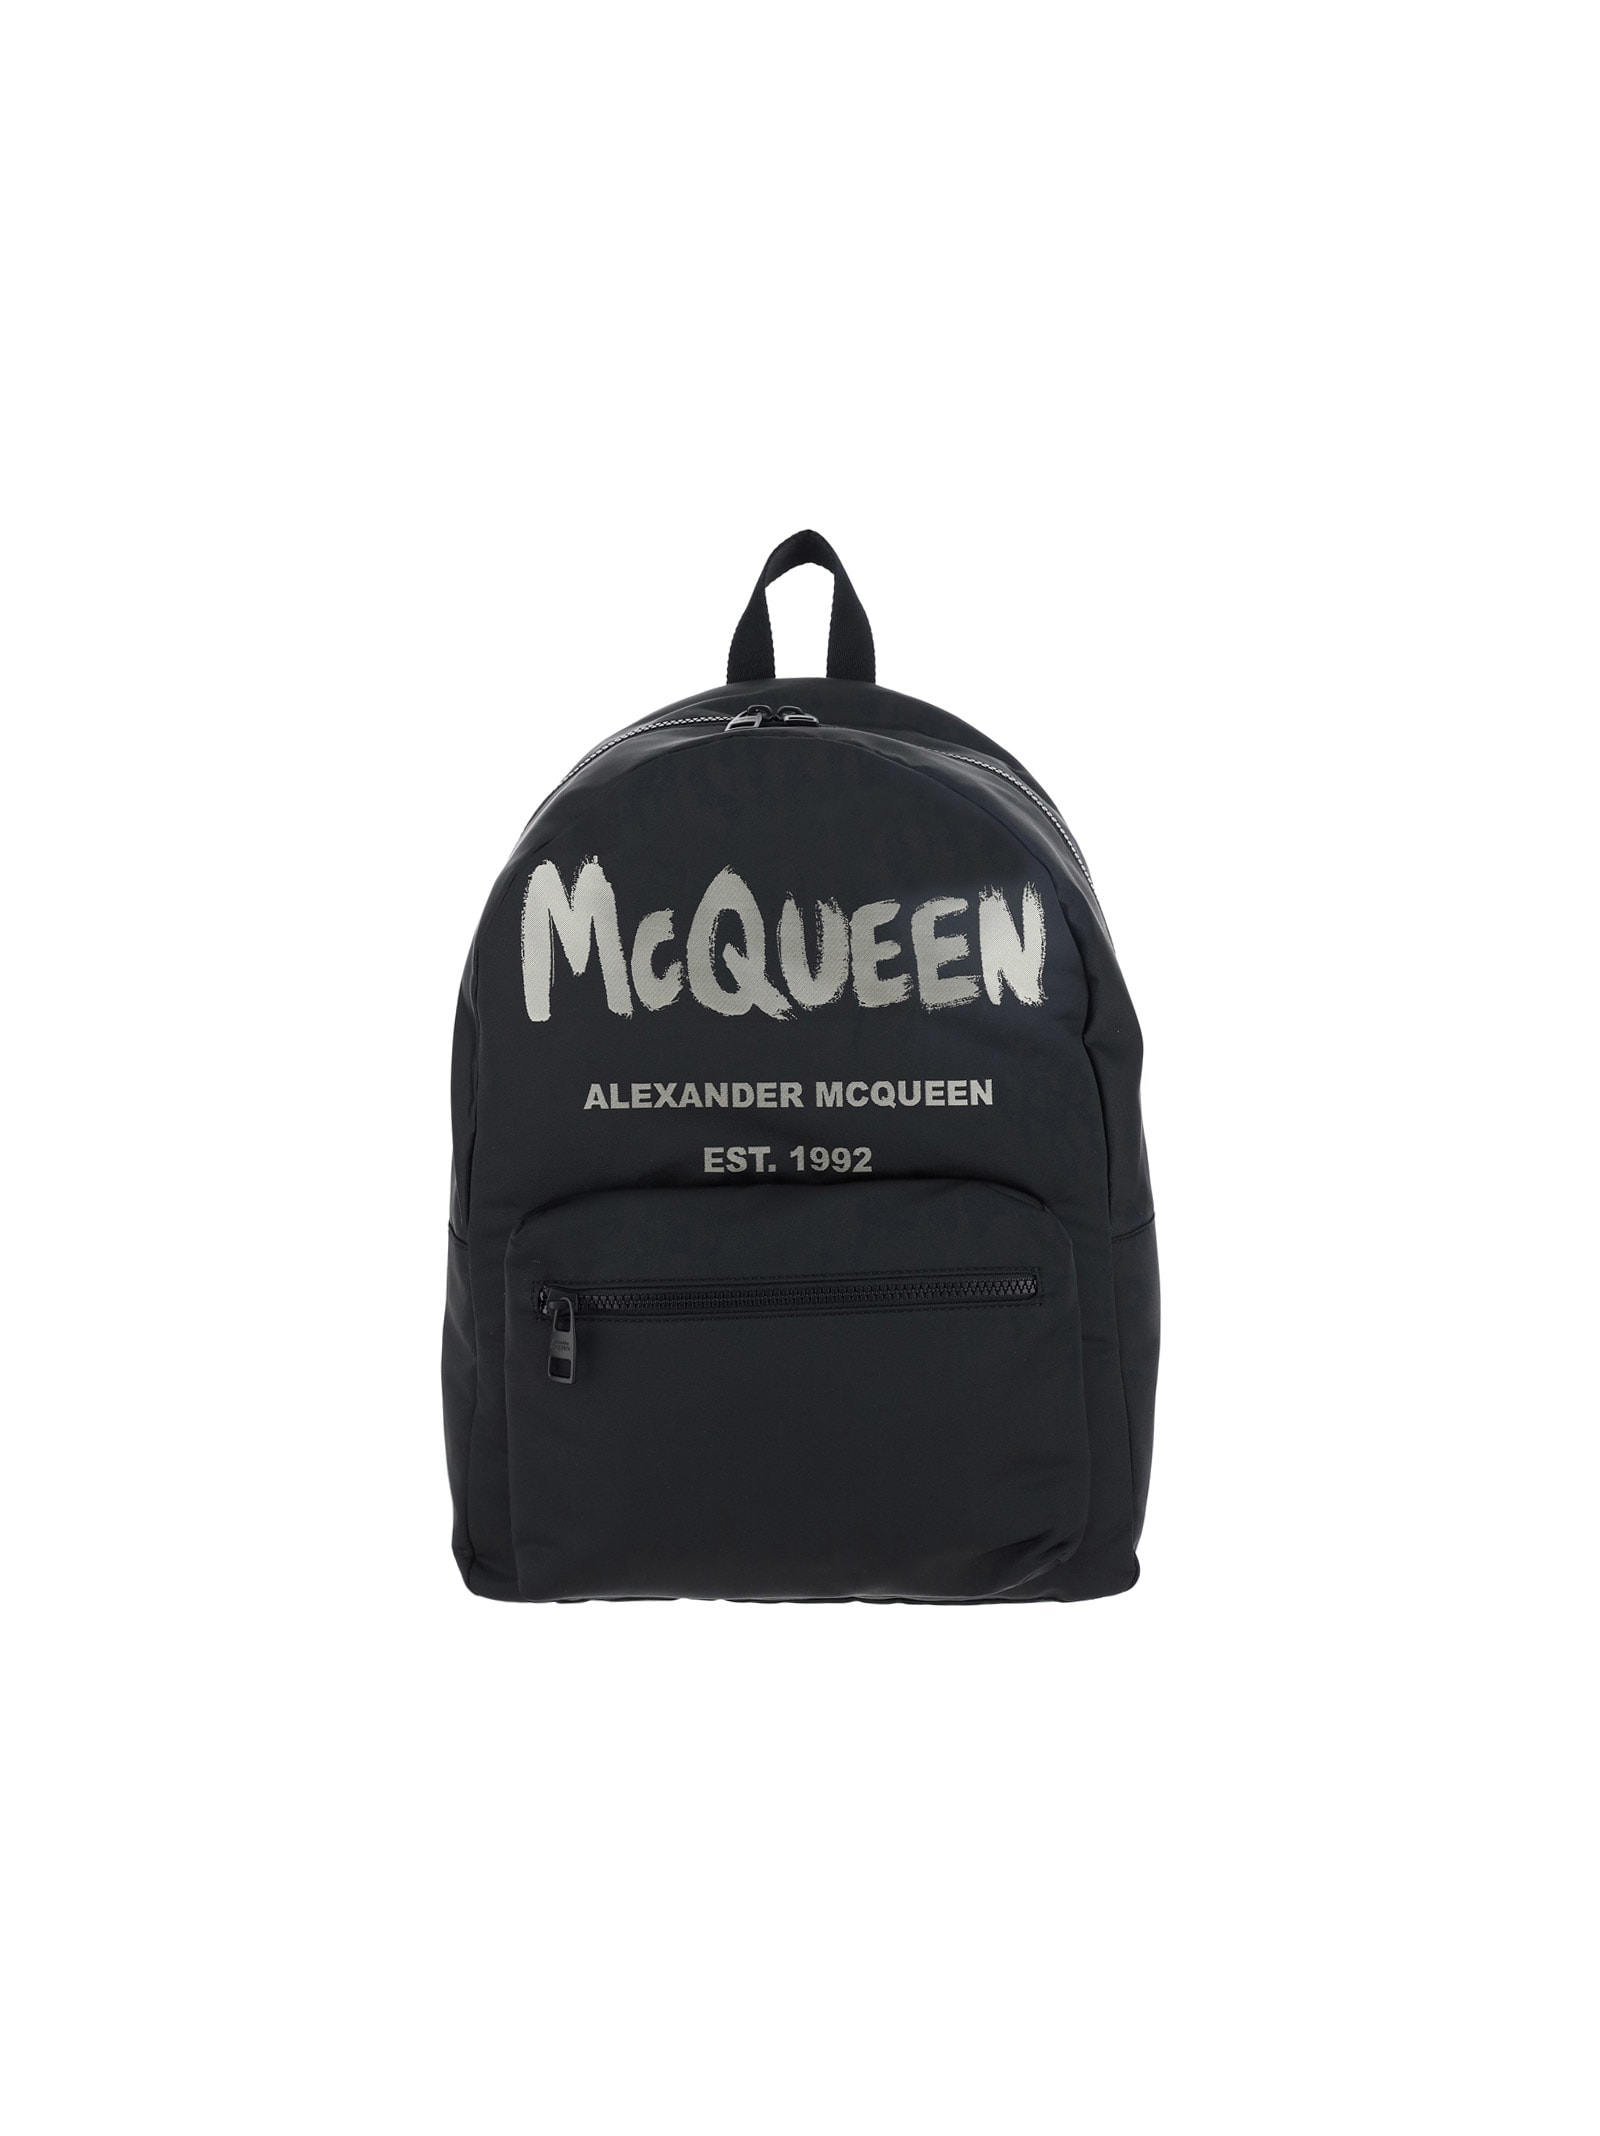 Alexander McQueen Alexander Mc Queen Backpack